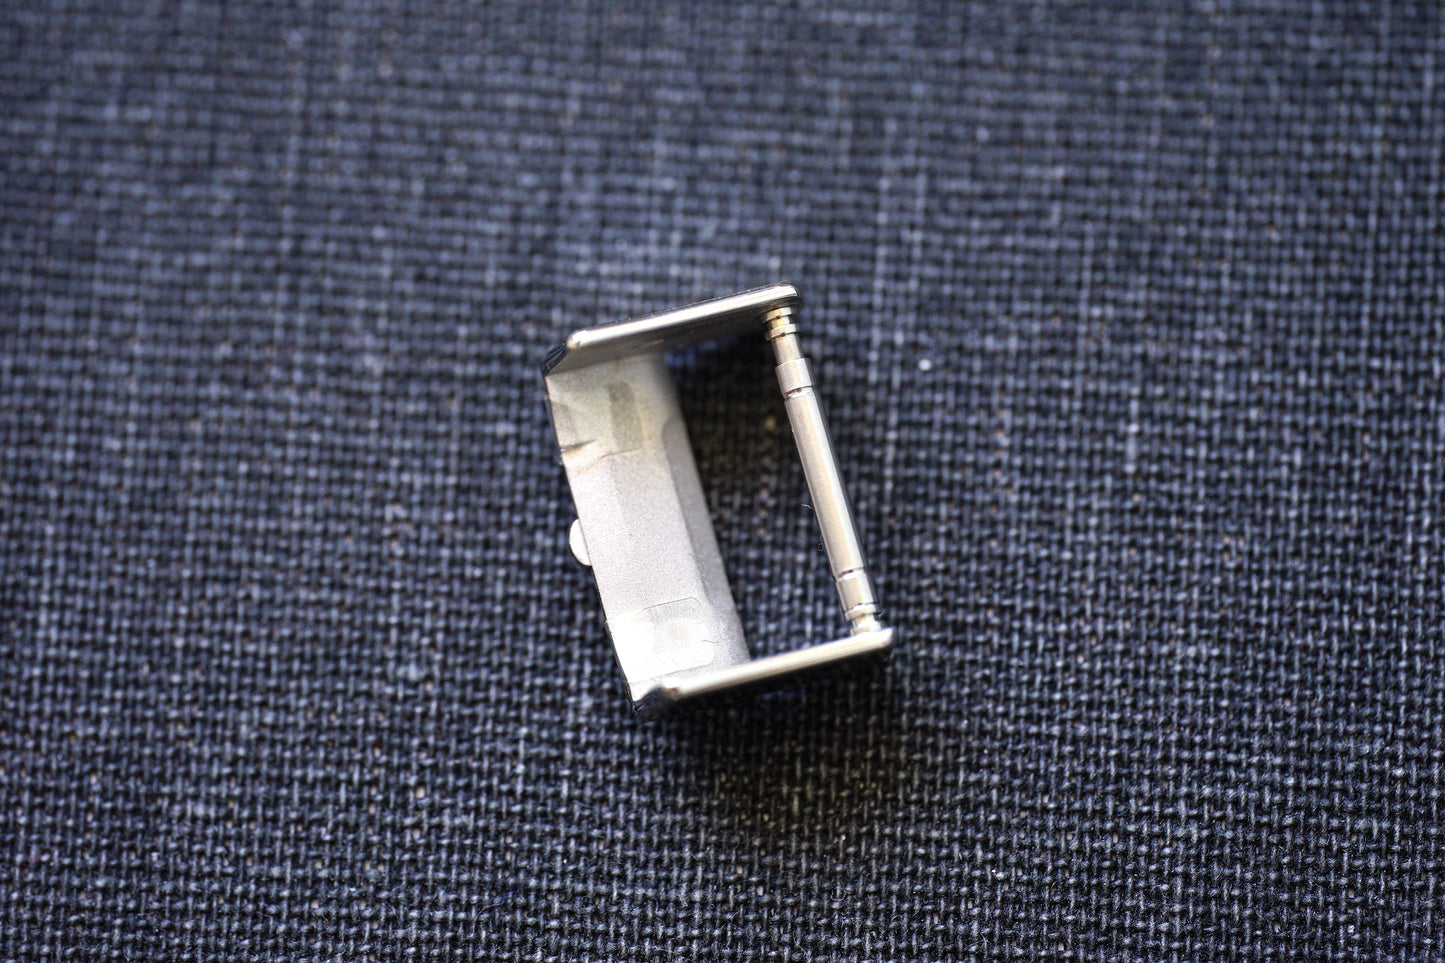 Rolex Austausch Flip-Lock Bügel für Oyster Stahl Band 79200 im Neuzustand. Noch verklebt